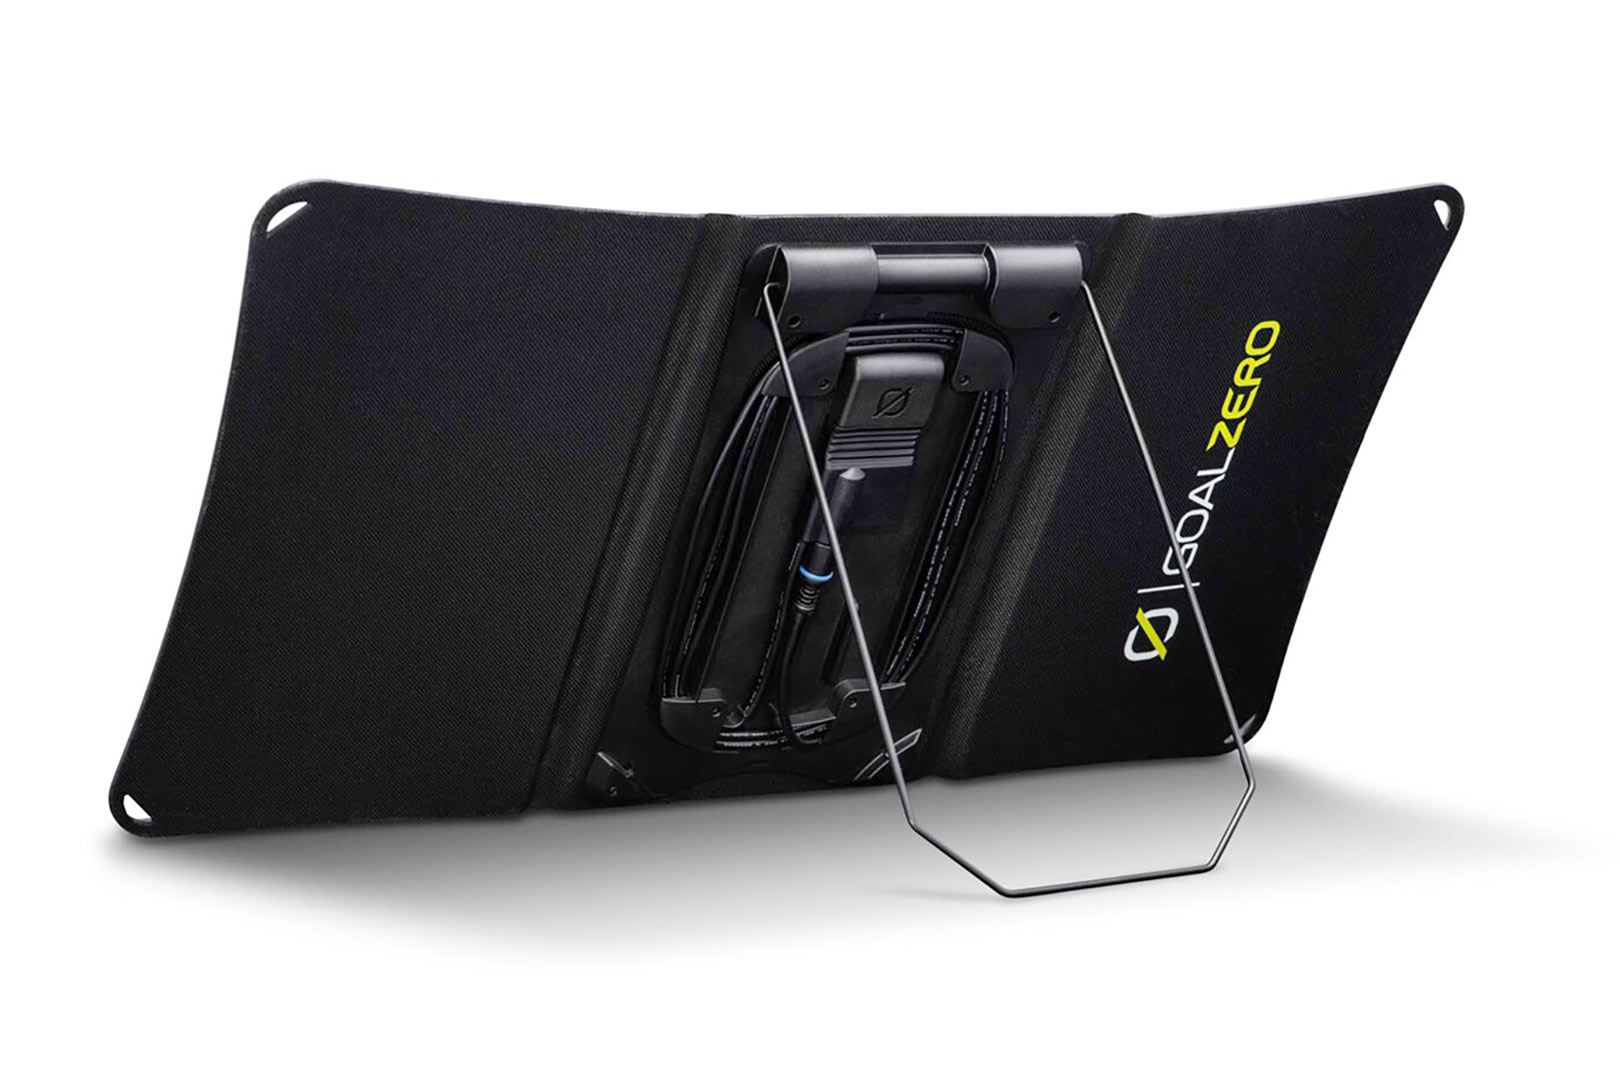 Goal Zero Nomad 20 Portable Solar Charger kan du vinde i "Ugens konkurrence" på fiskogfri.dk i uge 32 fra i morgen.